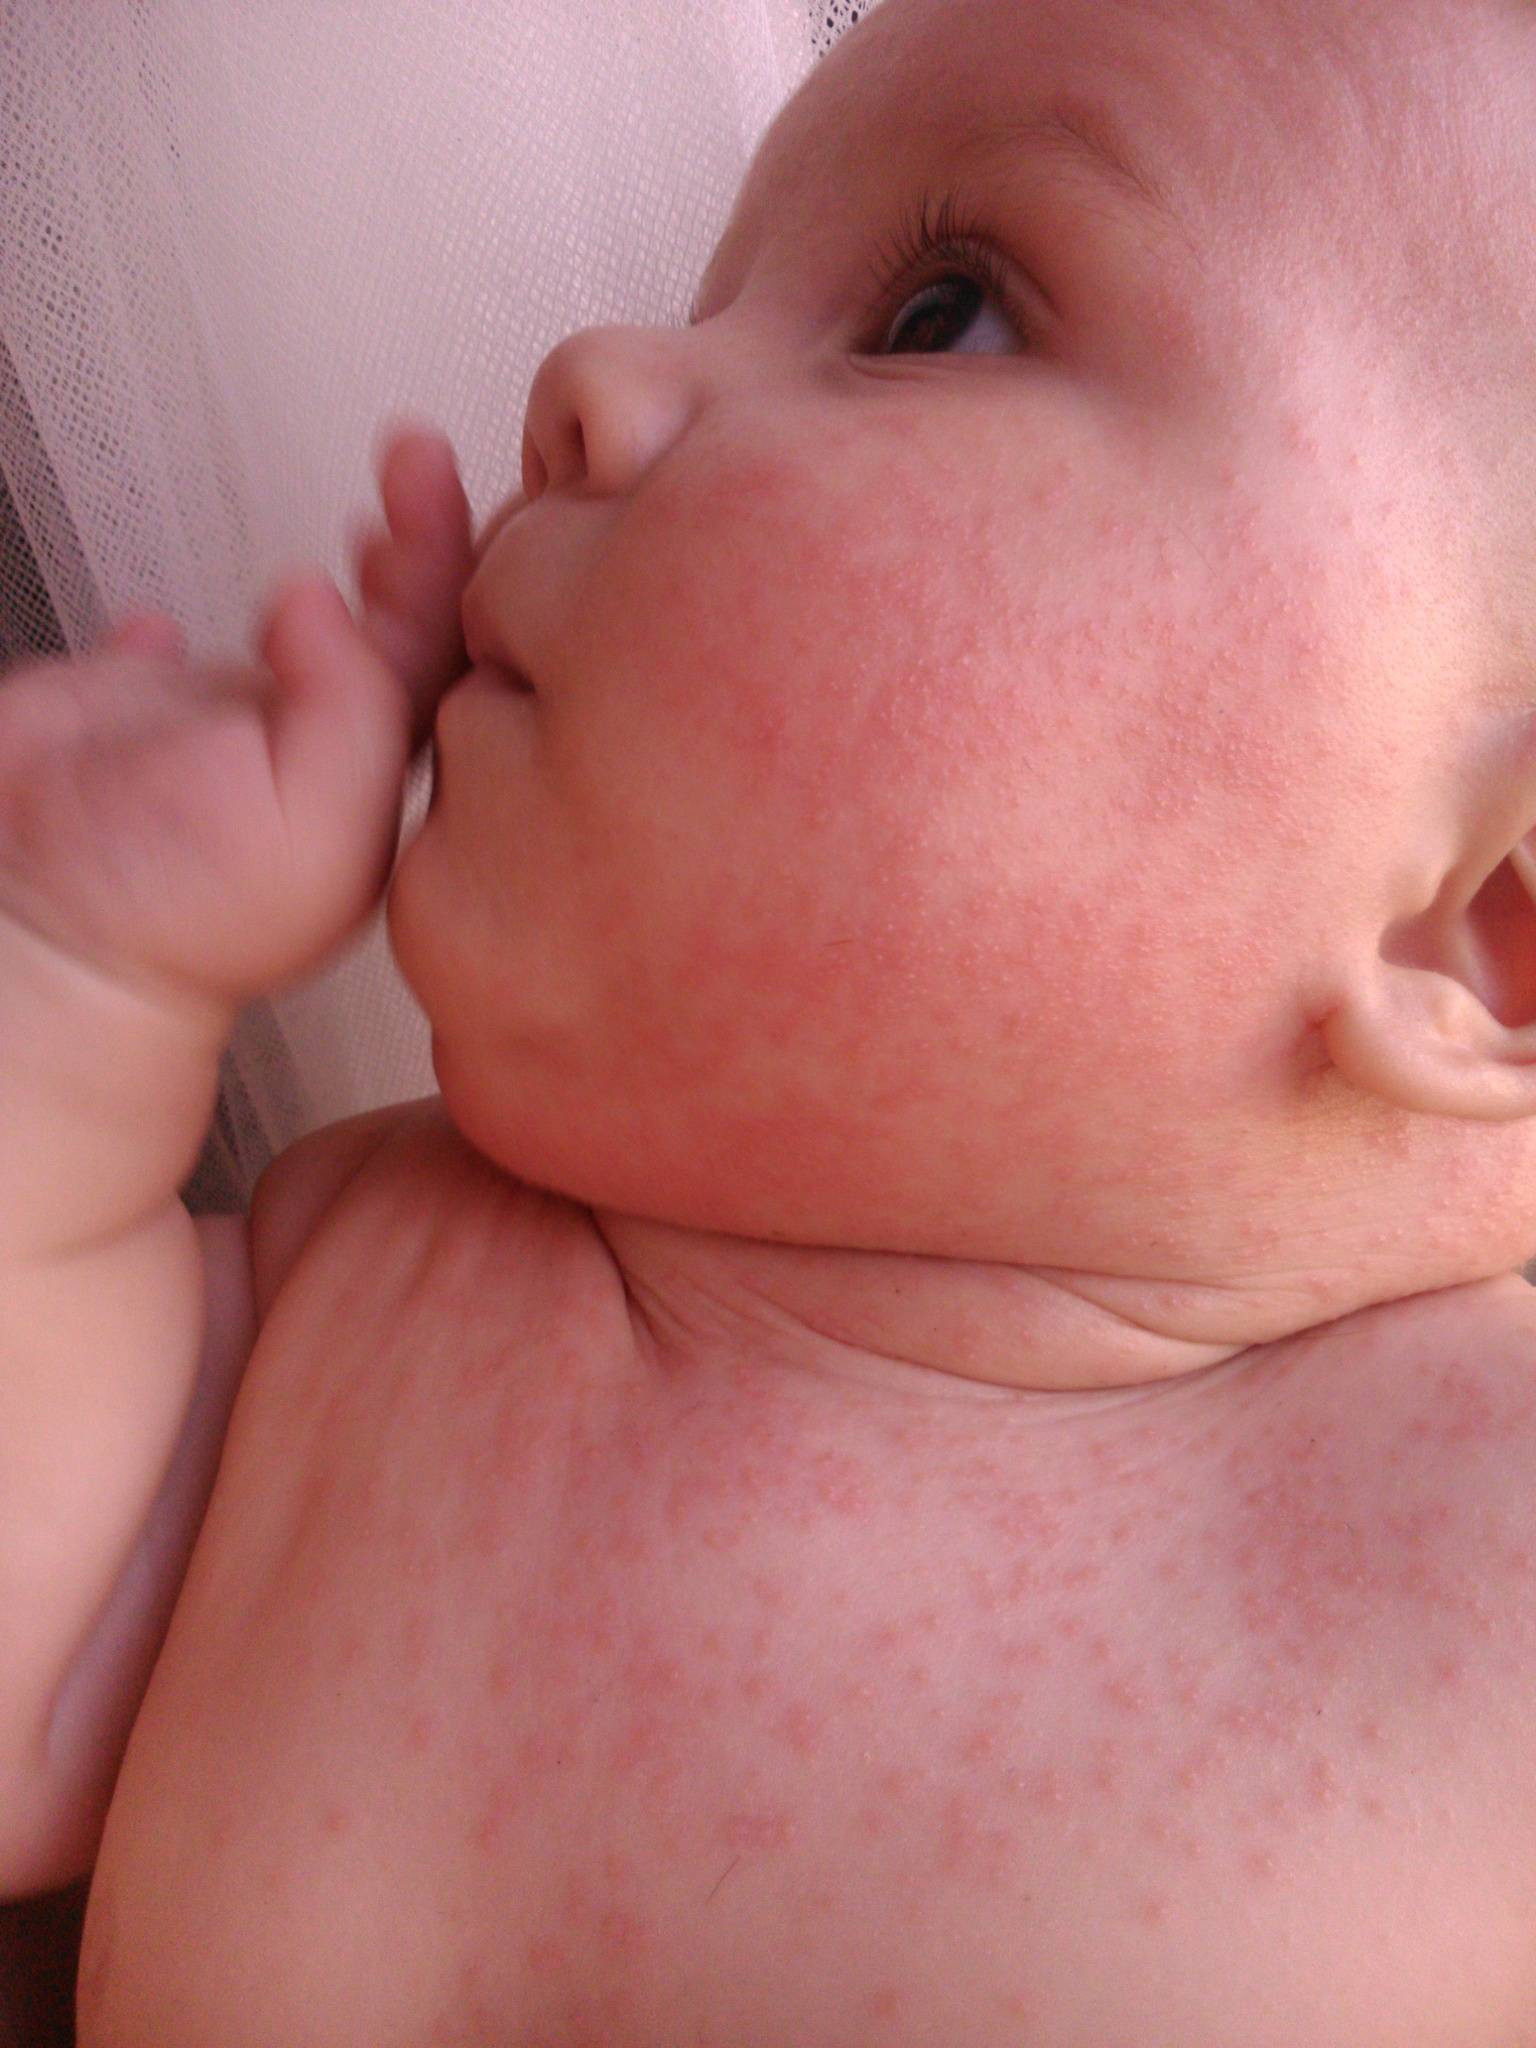 Гормональная сыпь у новорожденных: фото трехнедельных неонатальных прыщиков у детей